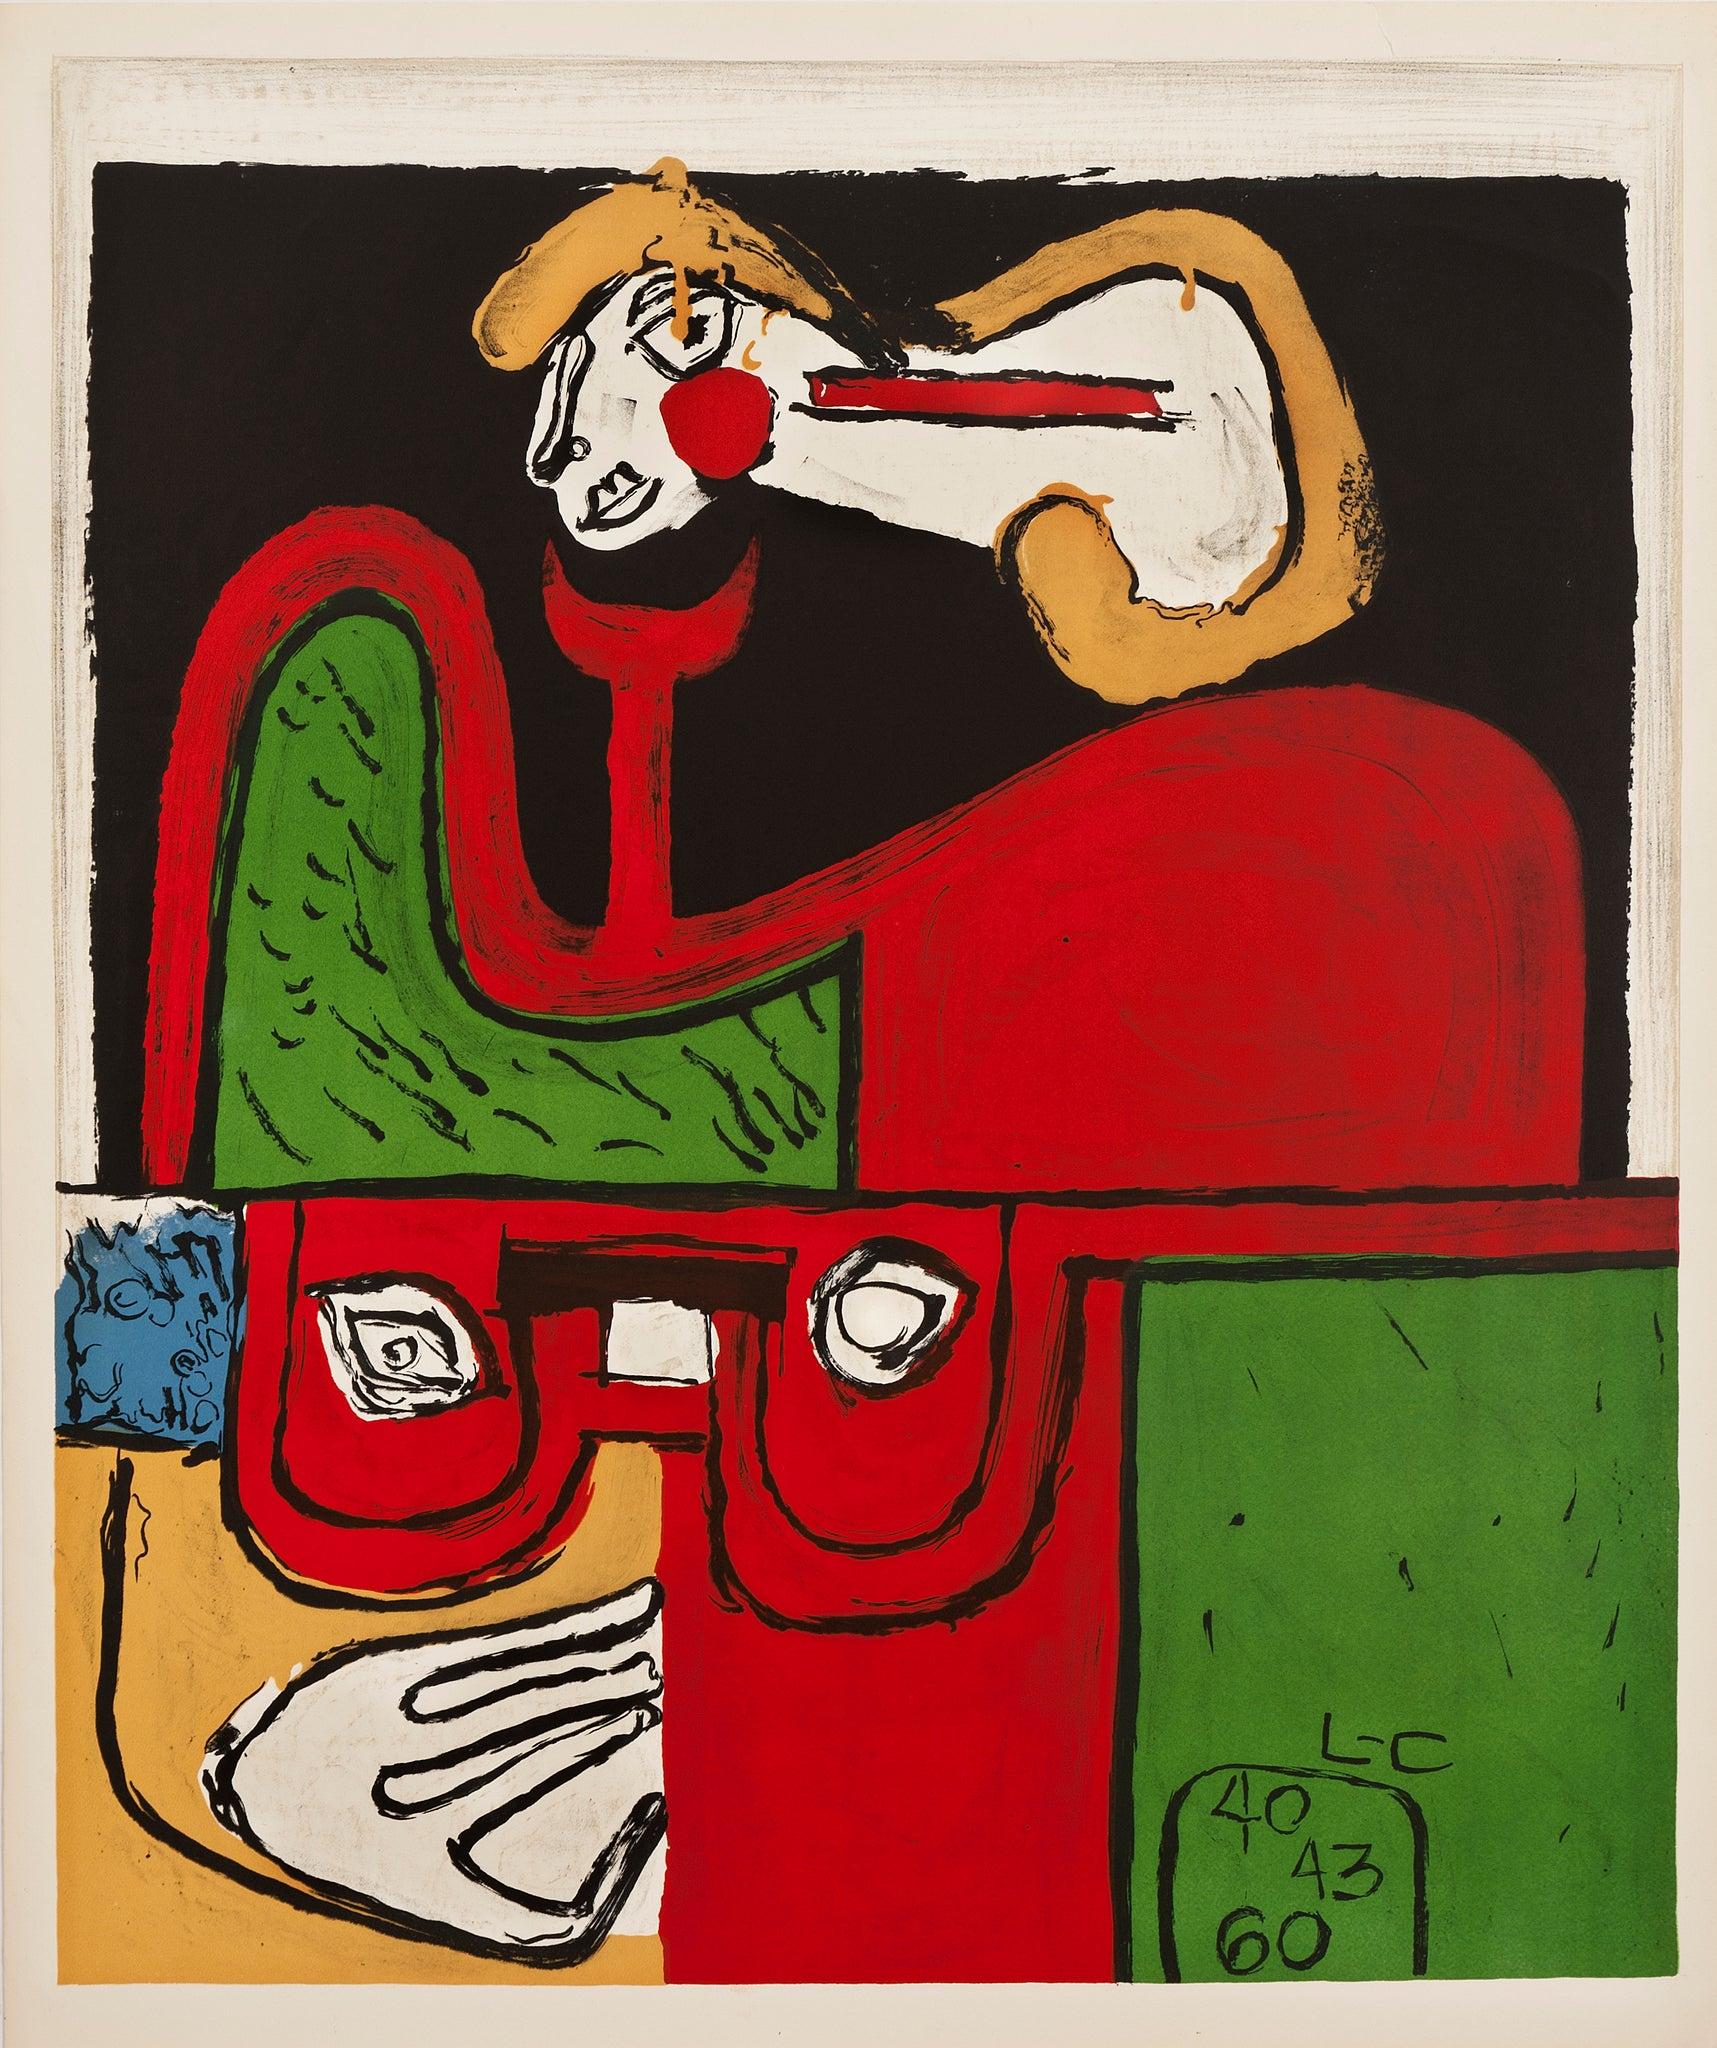 Künstler: Le Corbusier

Medium: Lithographie, 1960

Abmessungen: 30 x 25,5 Zoll, 76,2 x 64,8 cm

Velin d'Arches - Sehr guter Zustand A

Le Corbusier war ein visionärer Architekt, Schriftsteller, Theoretiker und Maler. Der als Charles-Édouard